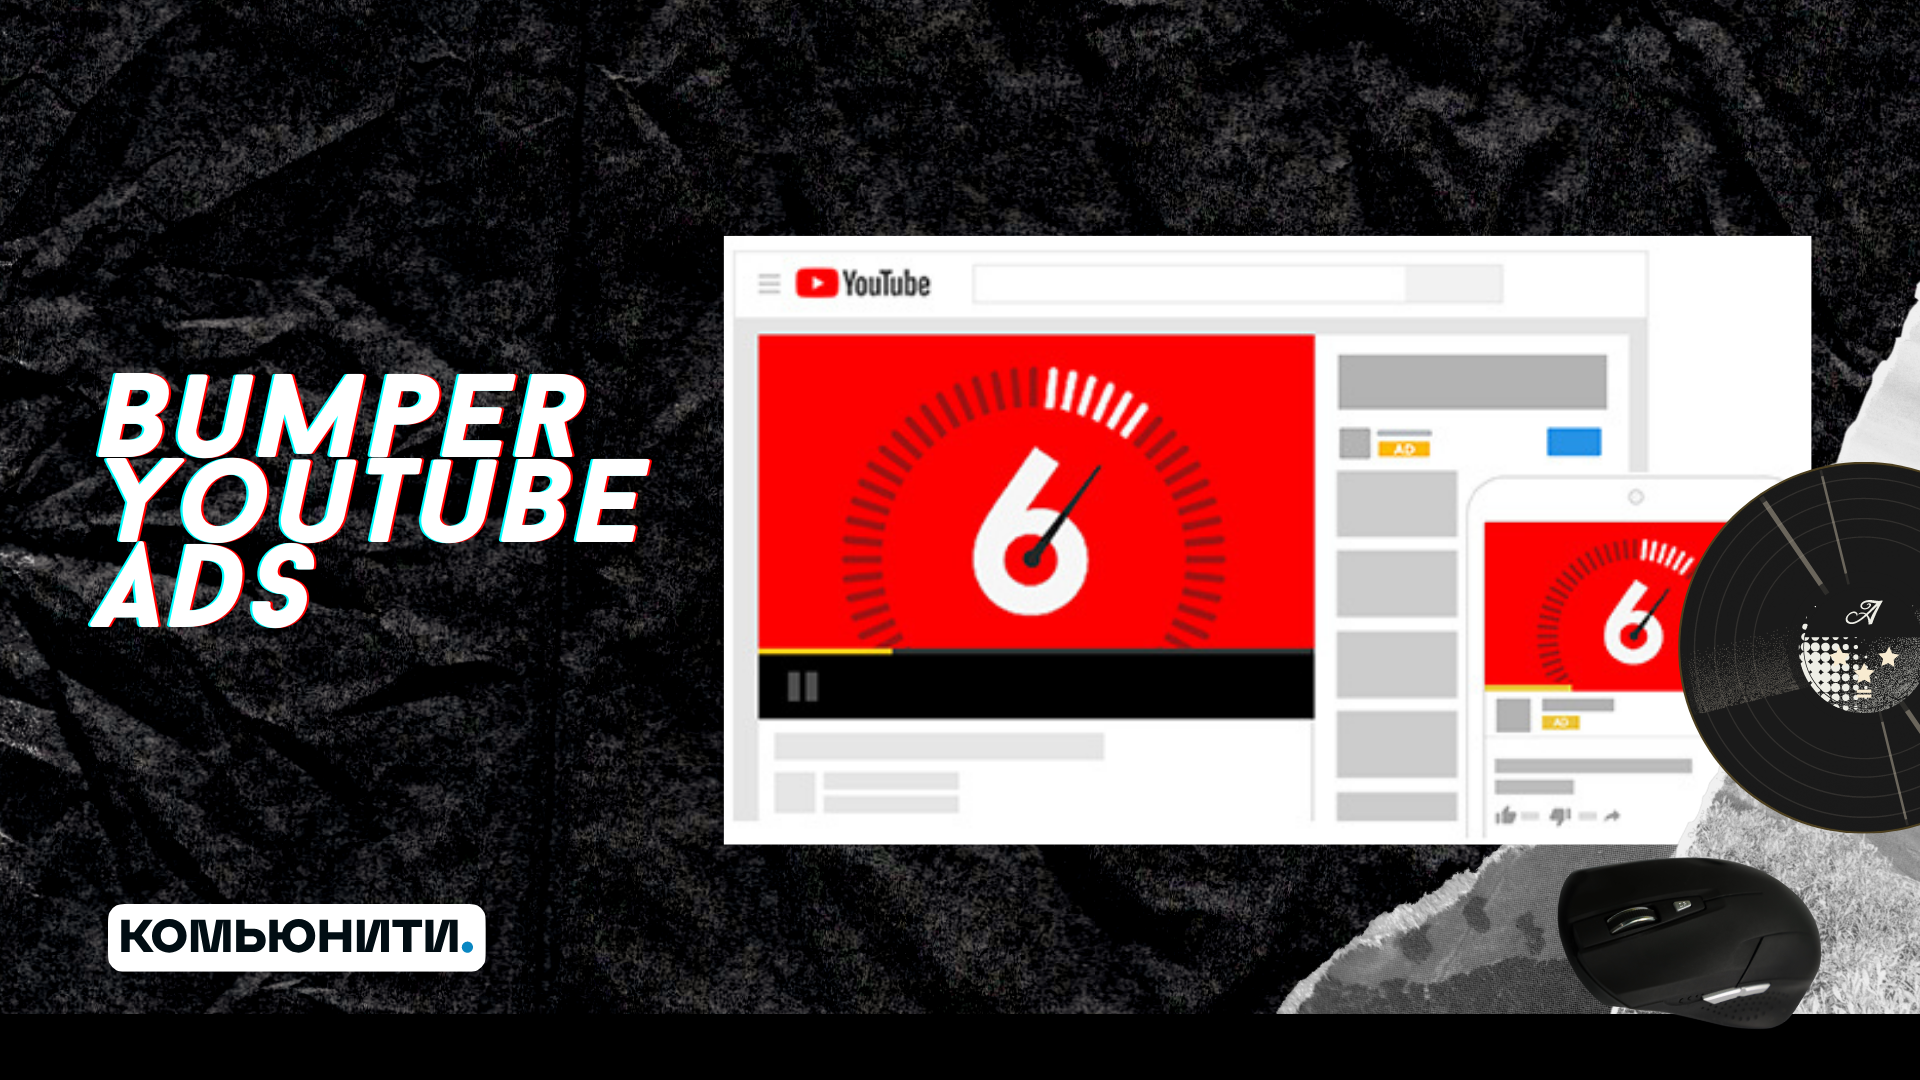 Bumper youtube ads